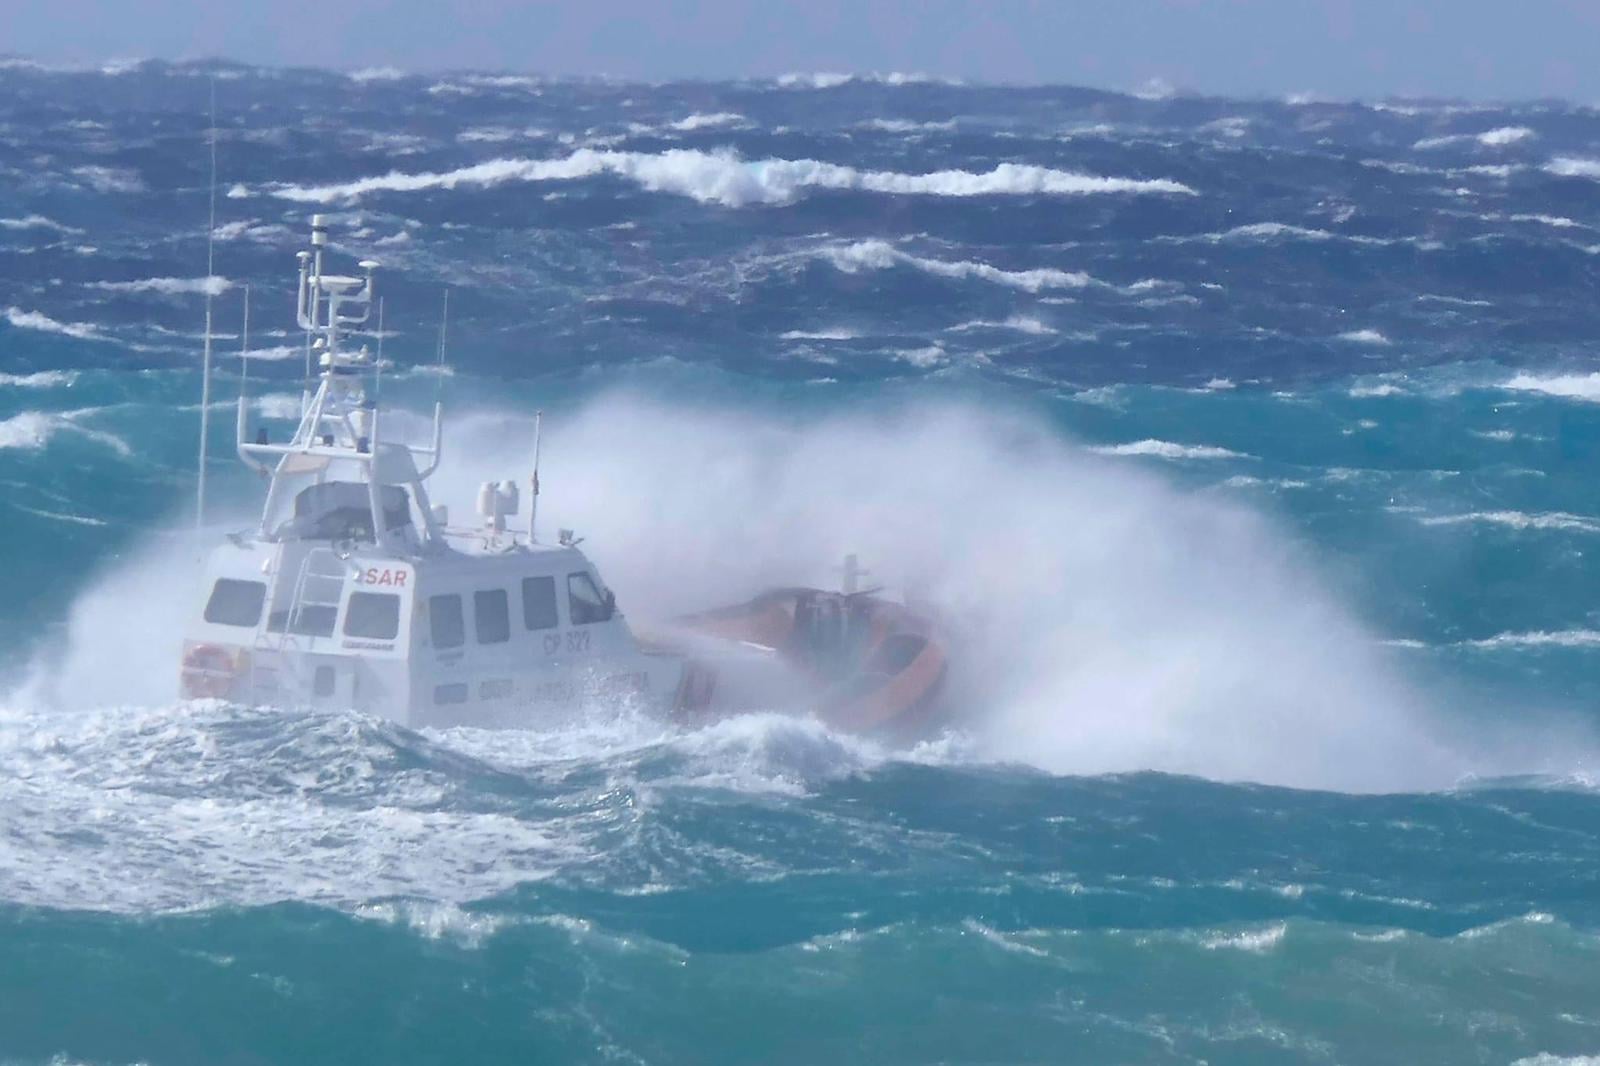 Si tuffa in mare per salvare due giovani, disperso militare della Guardia Costiera. In corso le ricerche